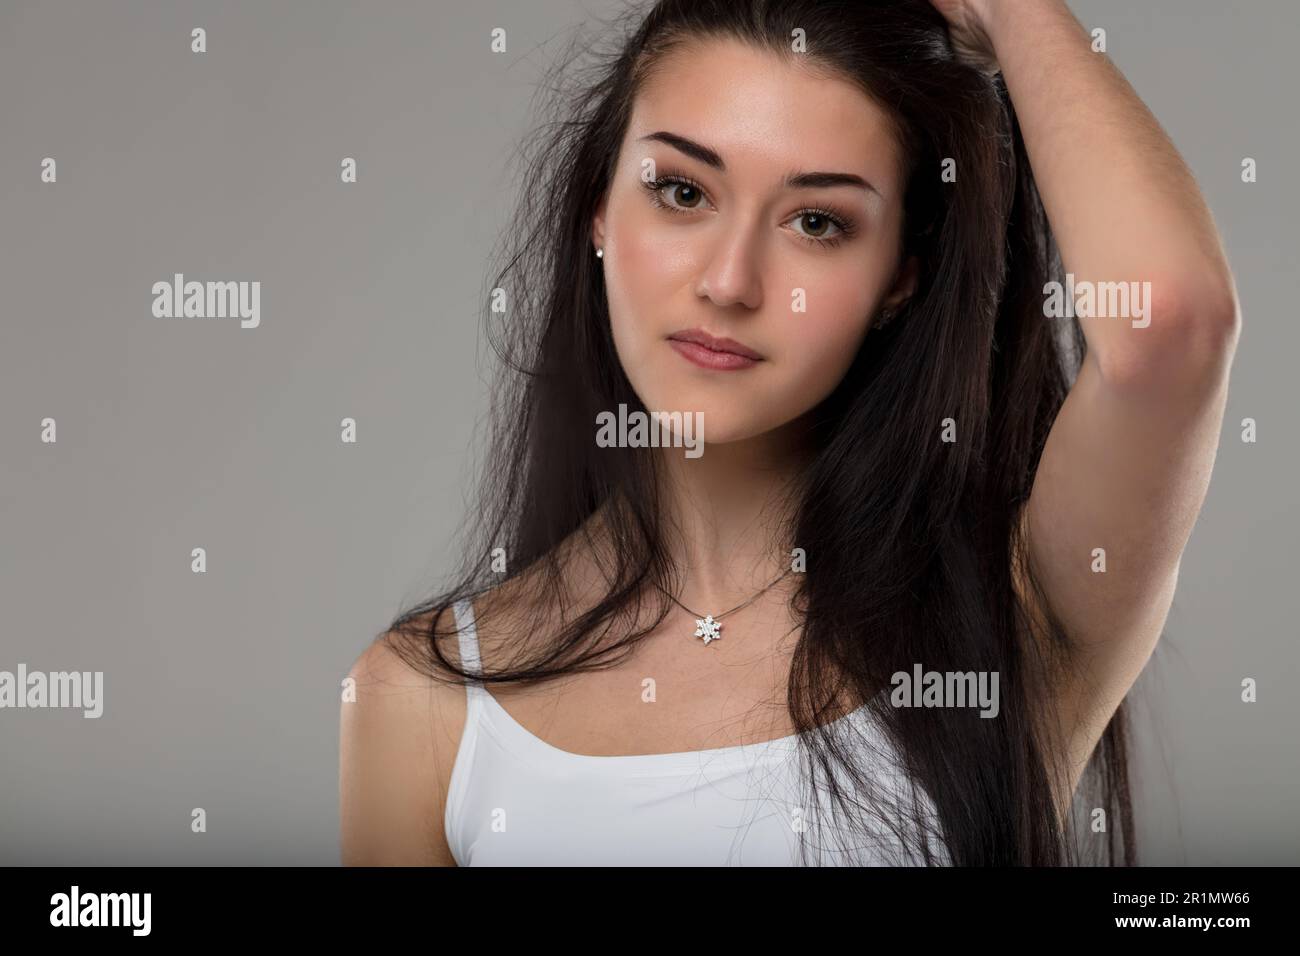 Junge Frau in weißem Tanktop, Hand in schwarzem Haar, lächelnd, sorgenfrei, gut gepflegt, Make-up, Halskette mit Juwel, intensiver Blick Stockfoto